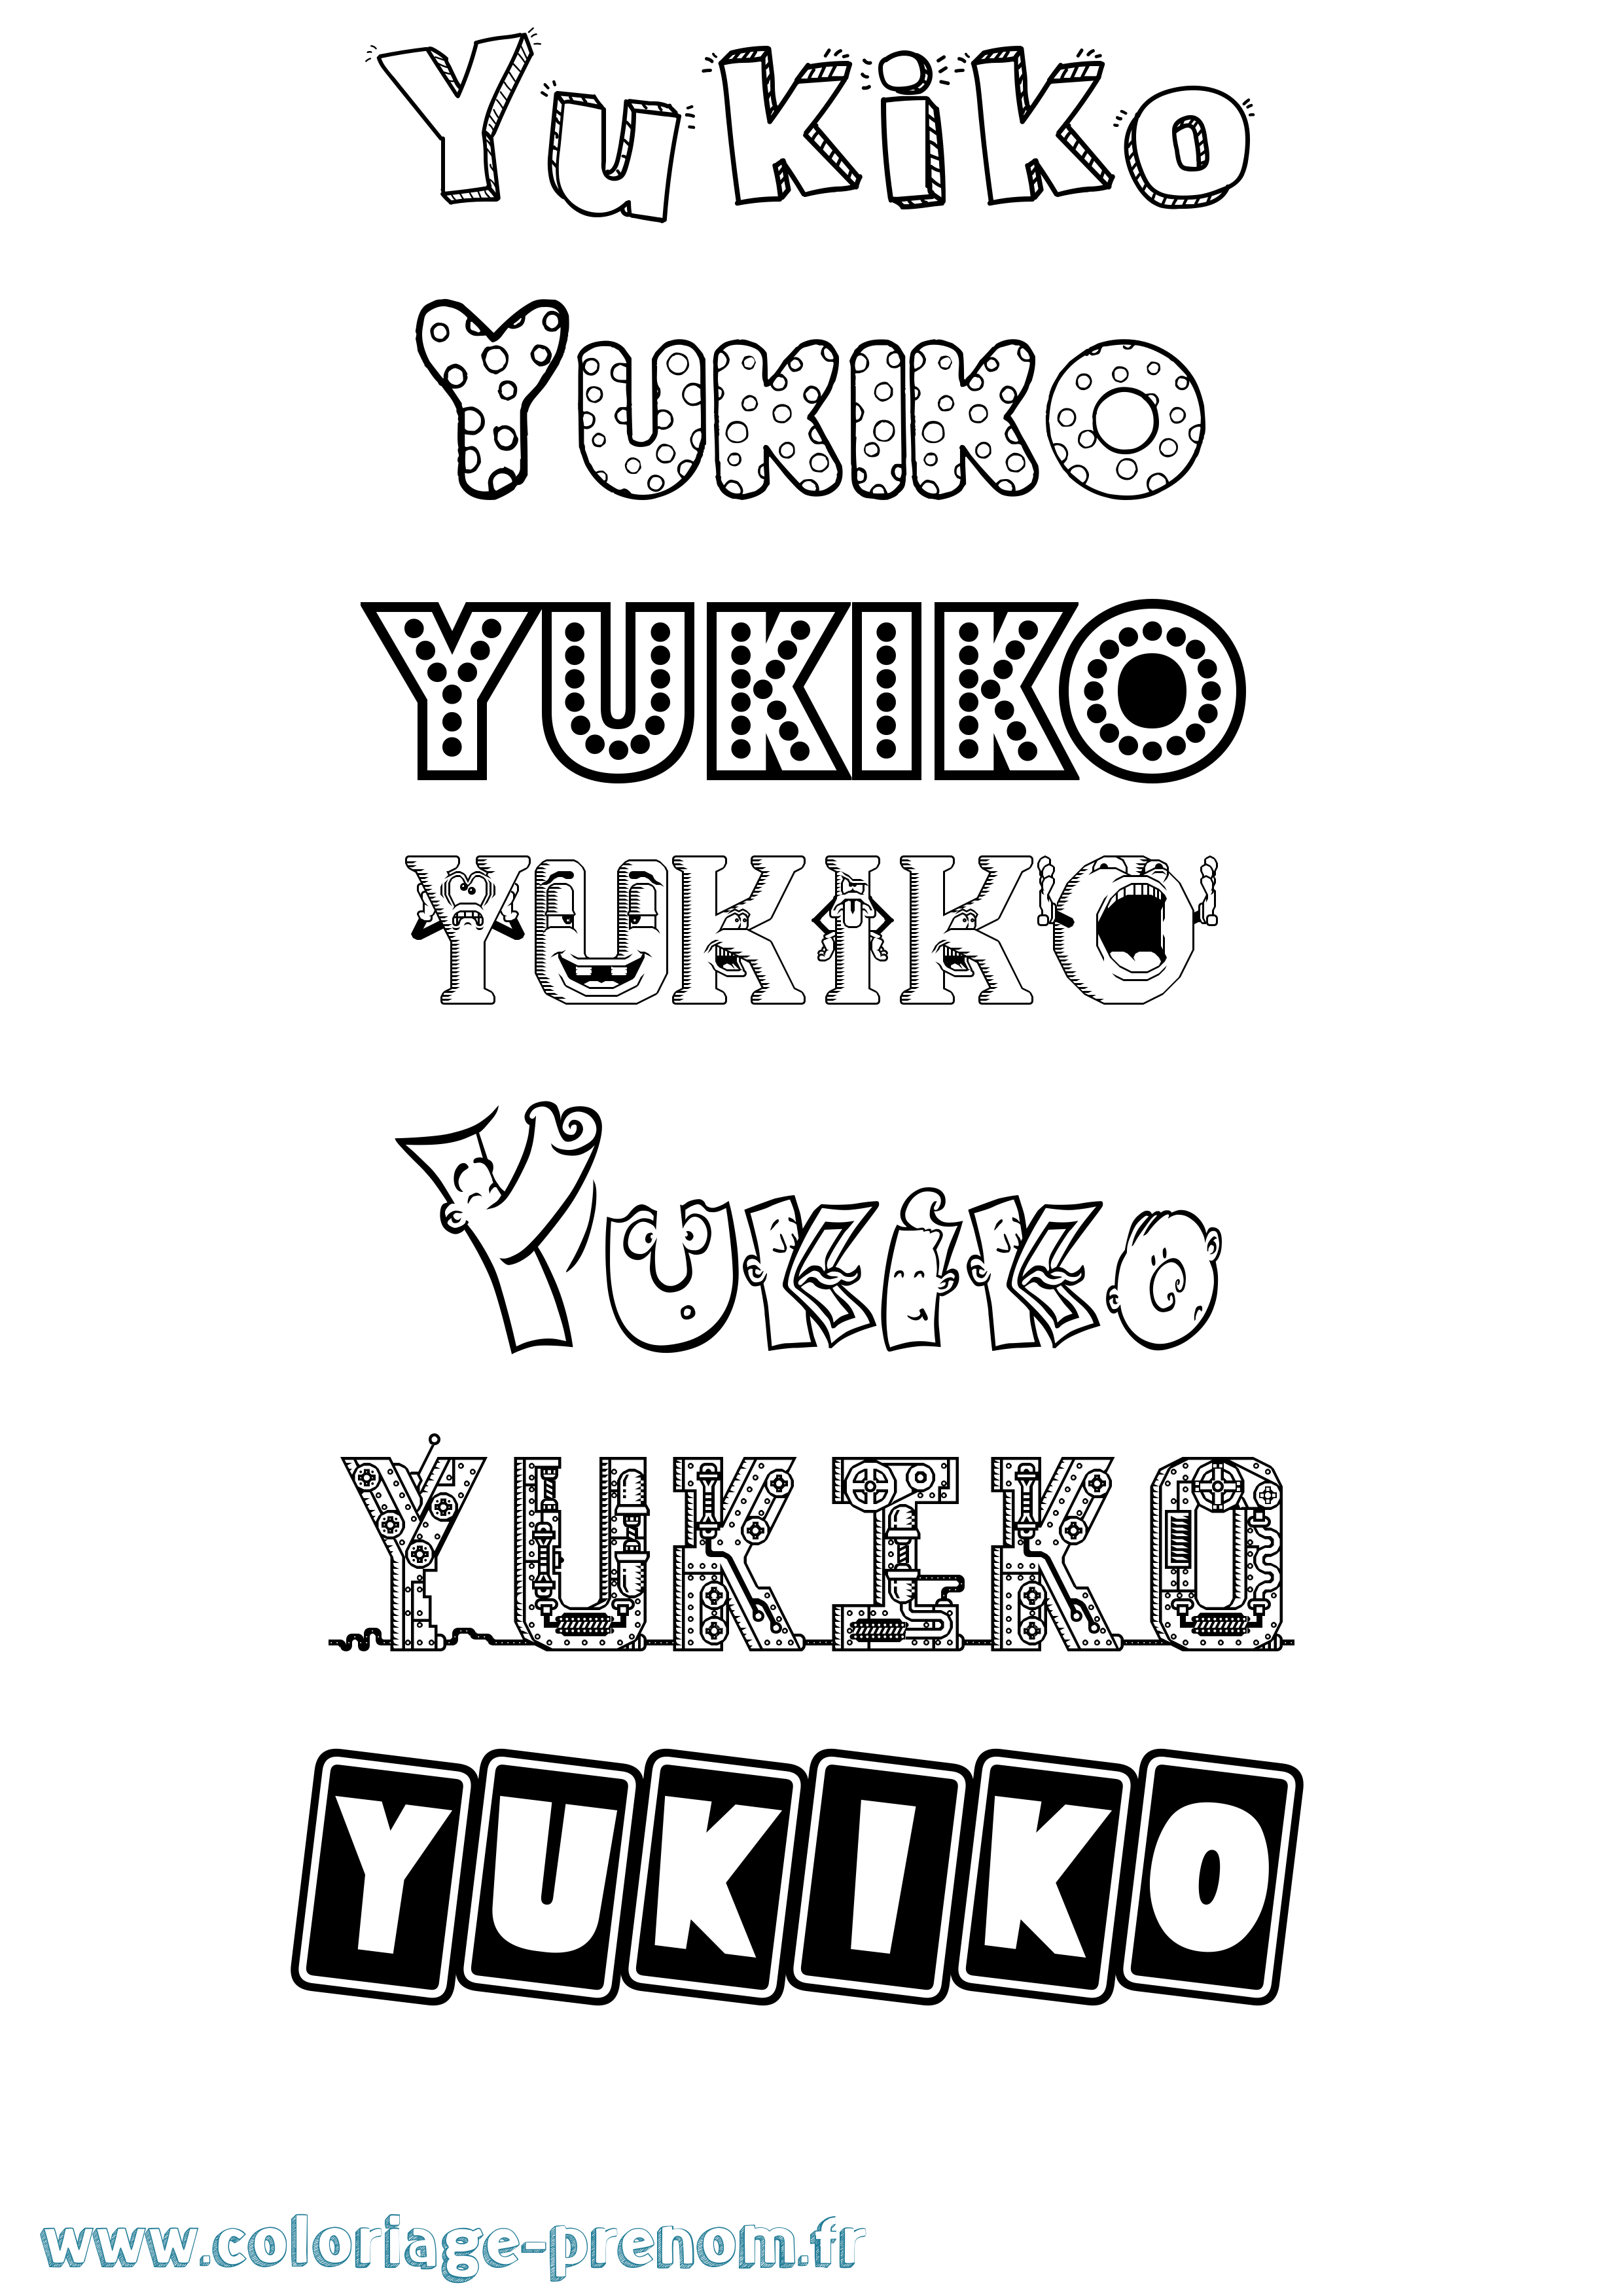 Coloriage prénom Yukiko Fun